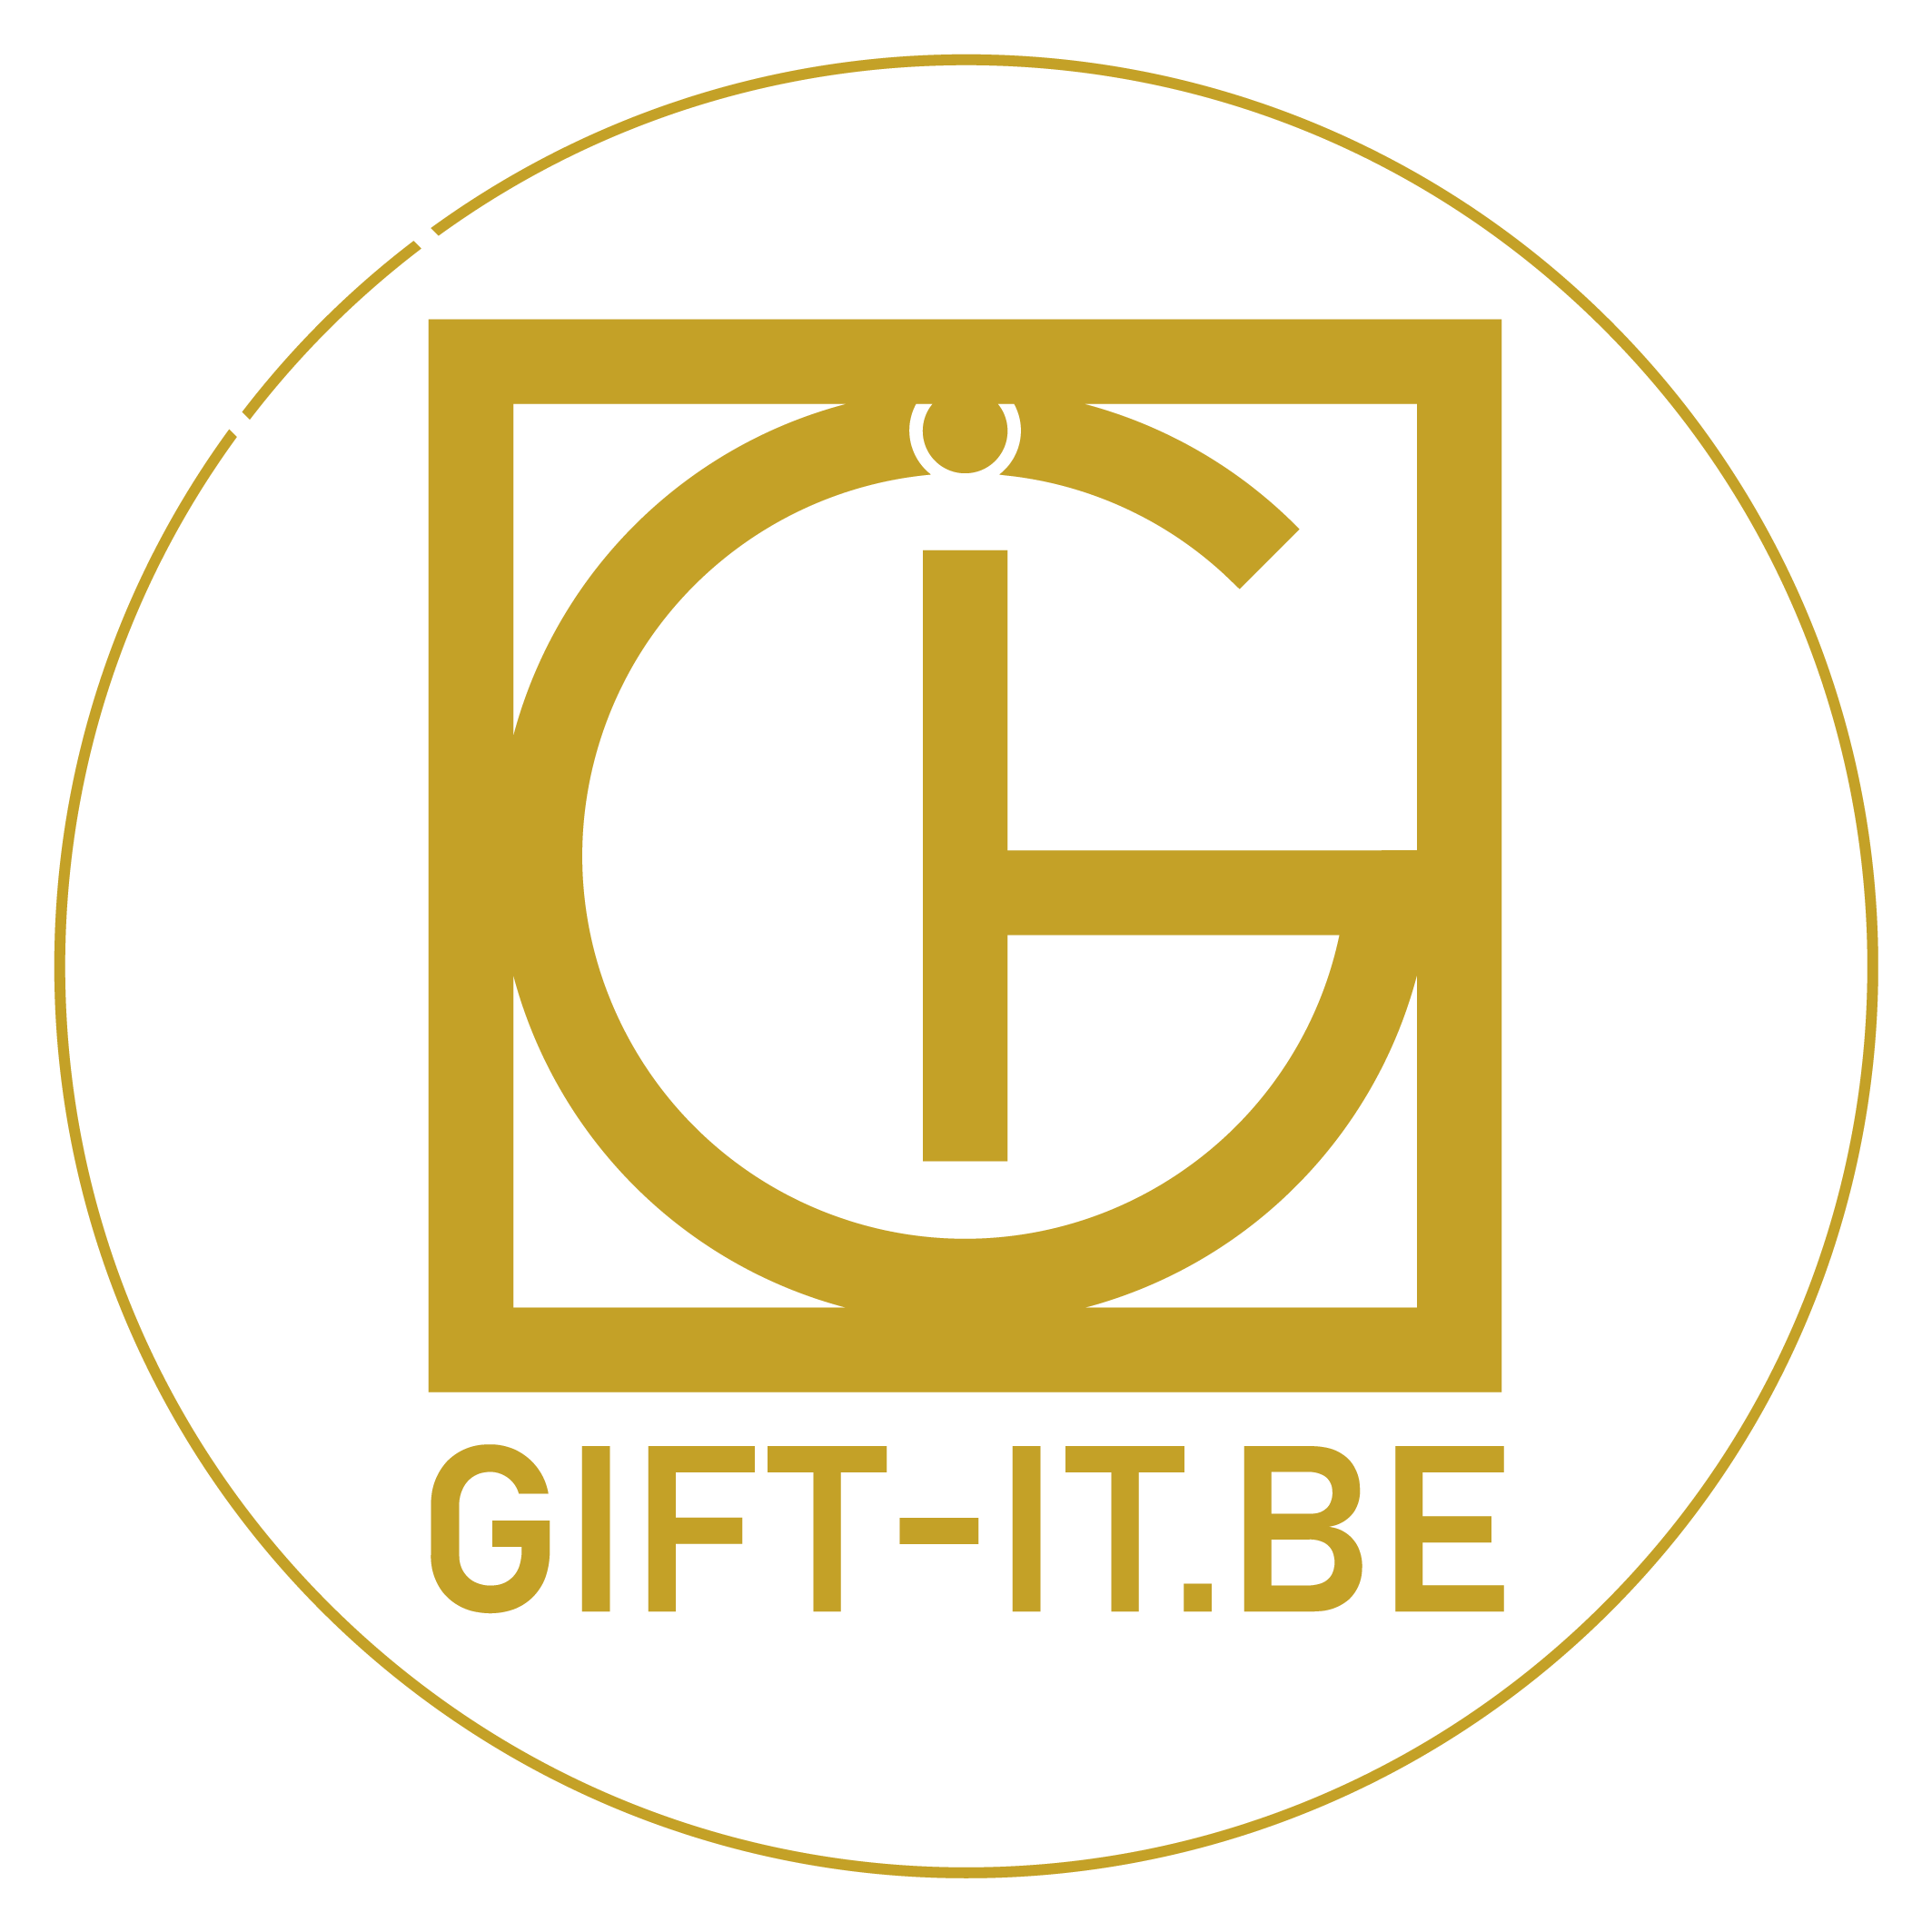 Kijk snel op www.gift-it.be.